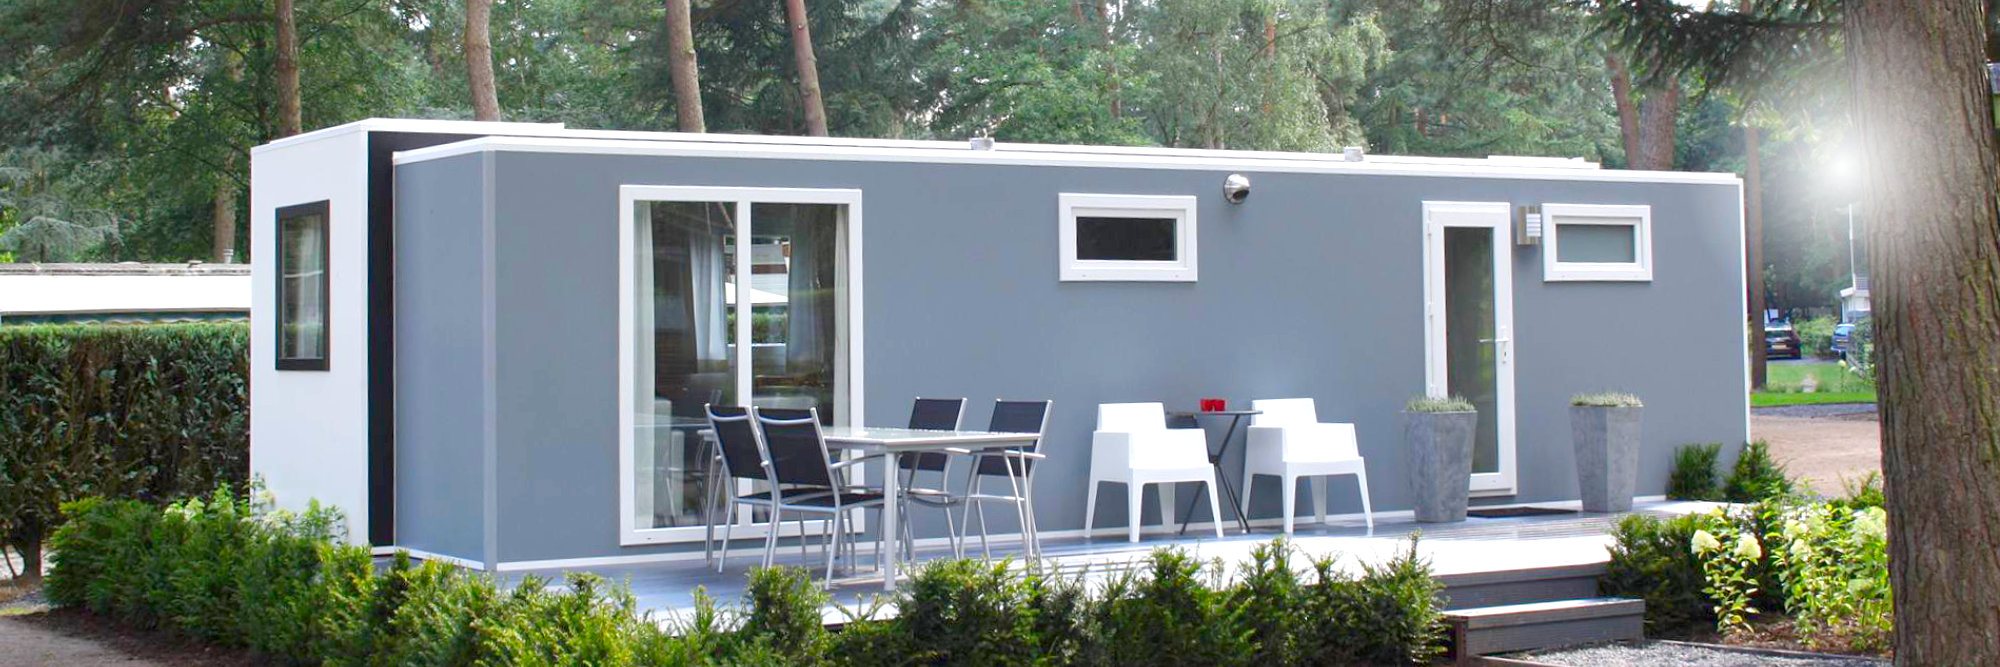 Decopan Modular Sunseeker Homes recreational houses Hollanda